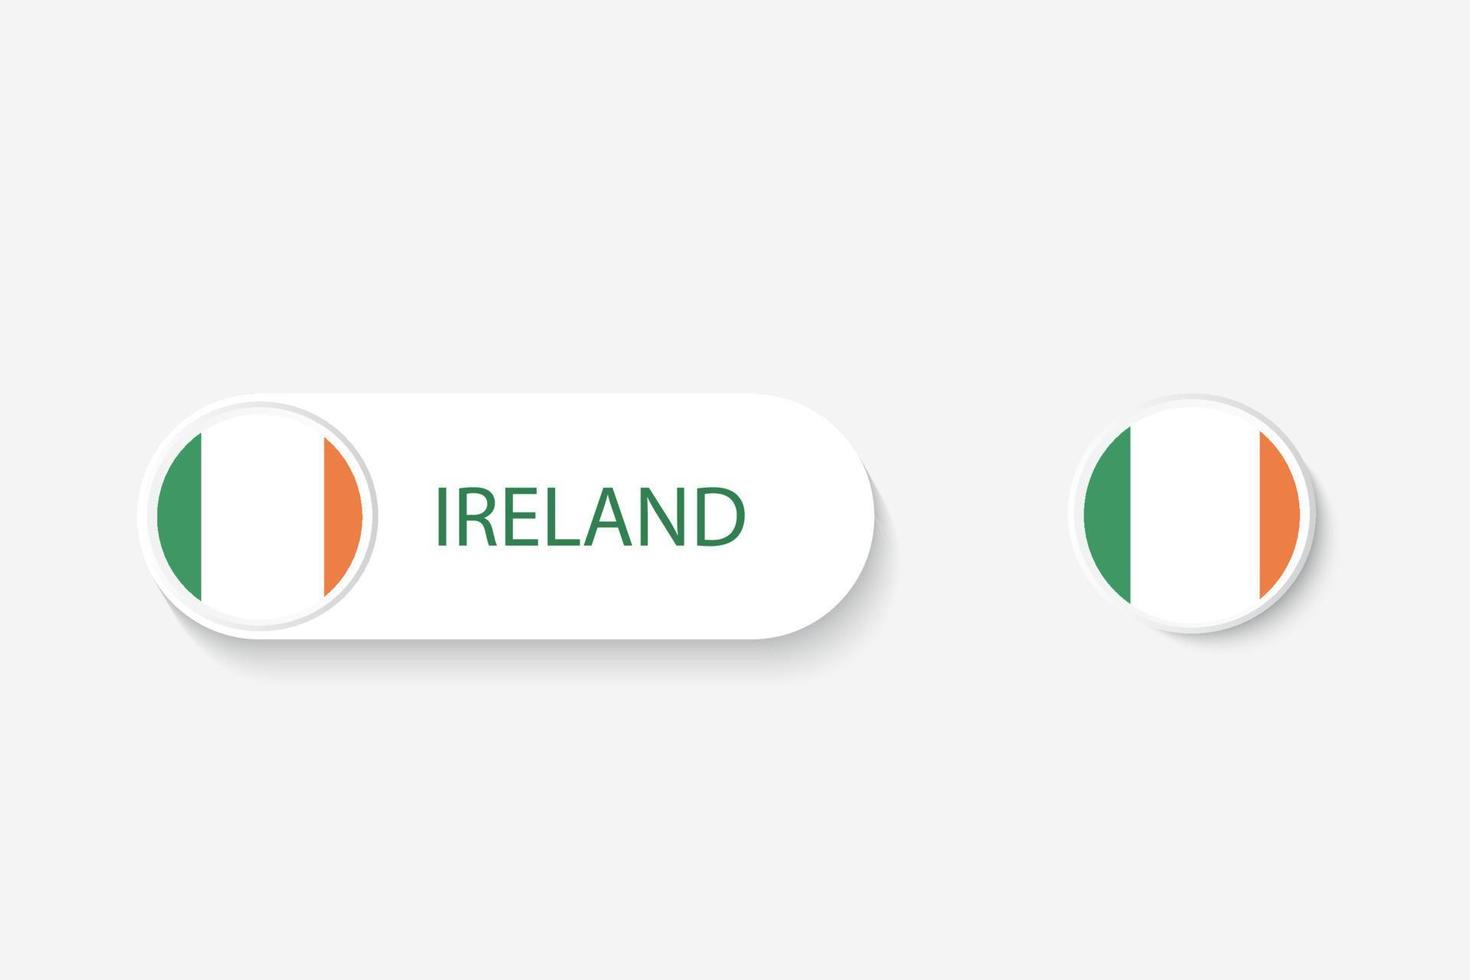 ierland knop vlag in illustratie van ovaal gevormd met woord van ierland. en knop vlag Ierland. vector